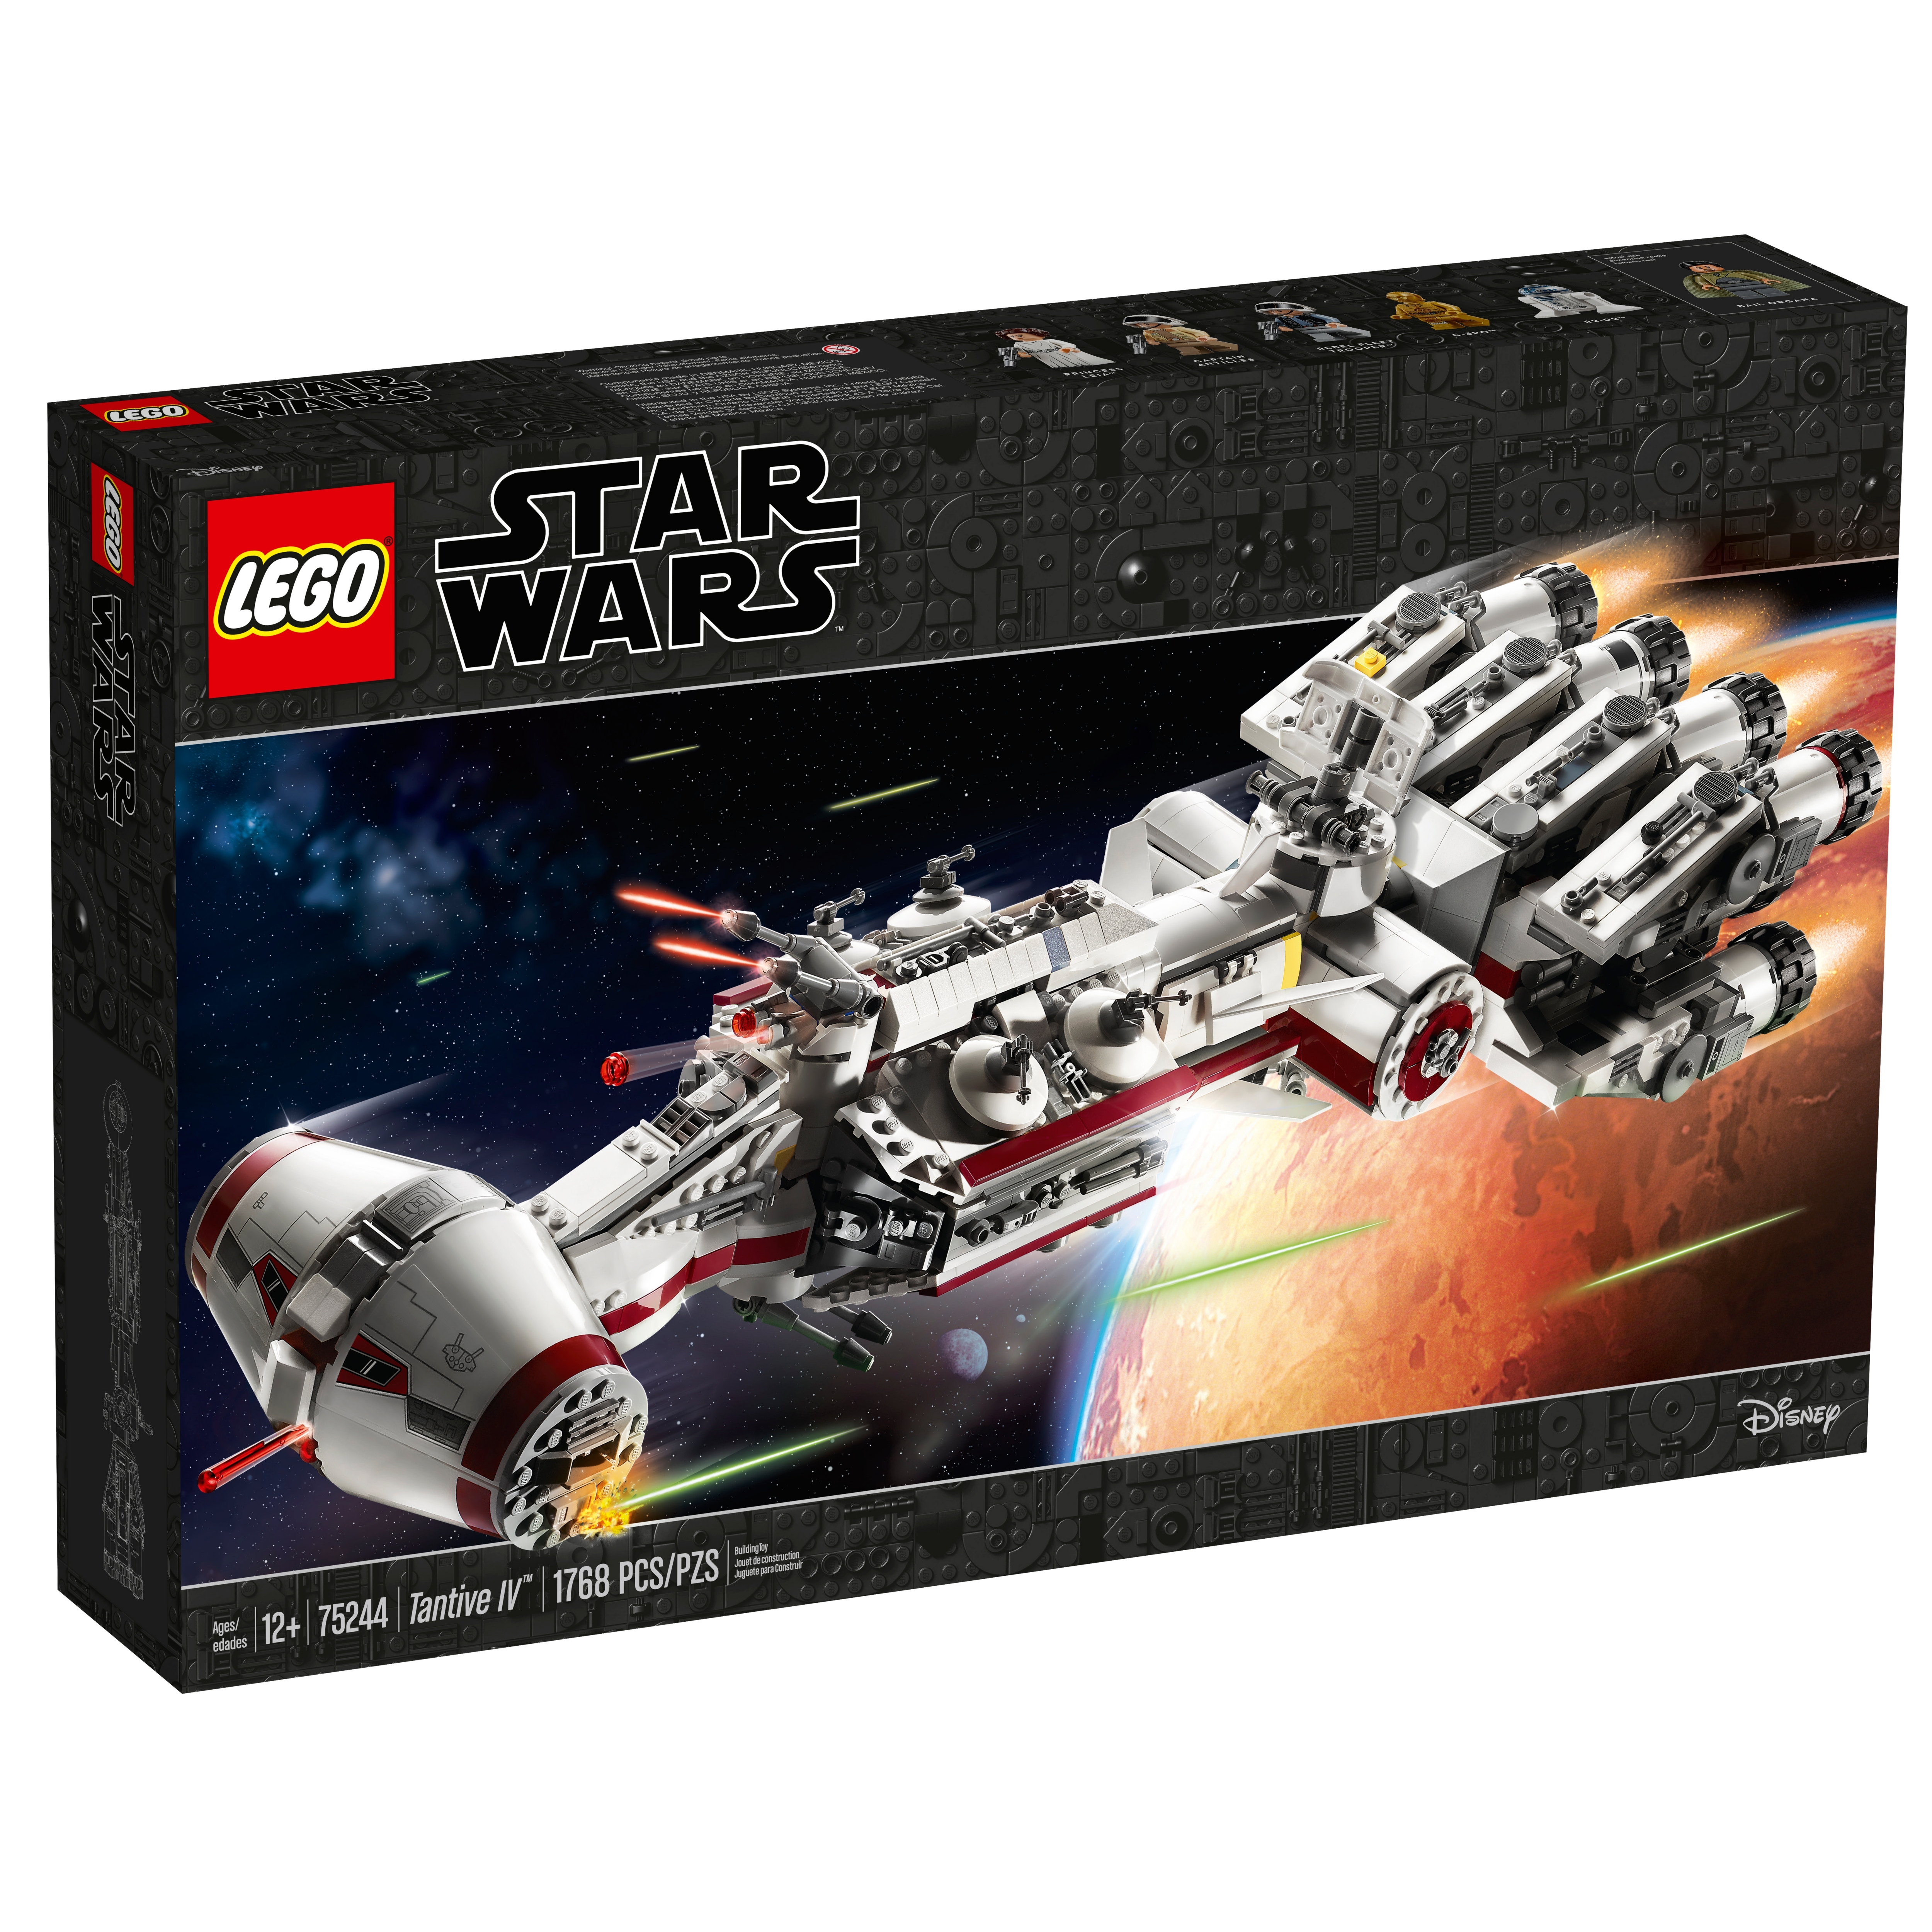 star wars lego sets ships